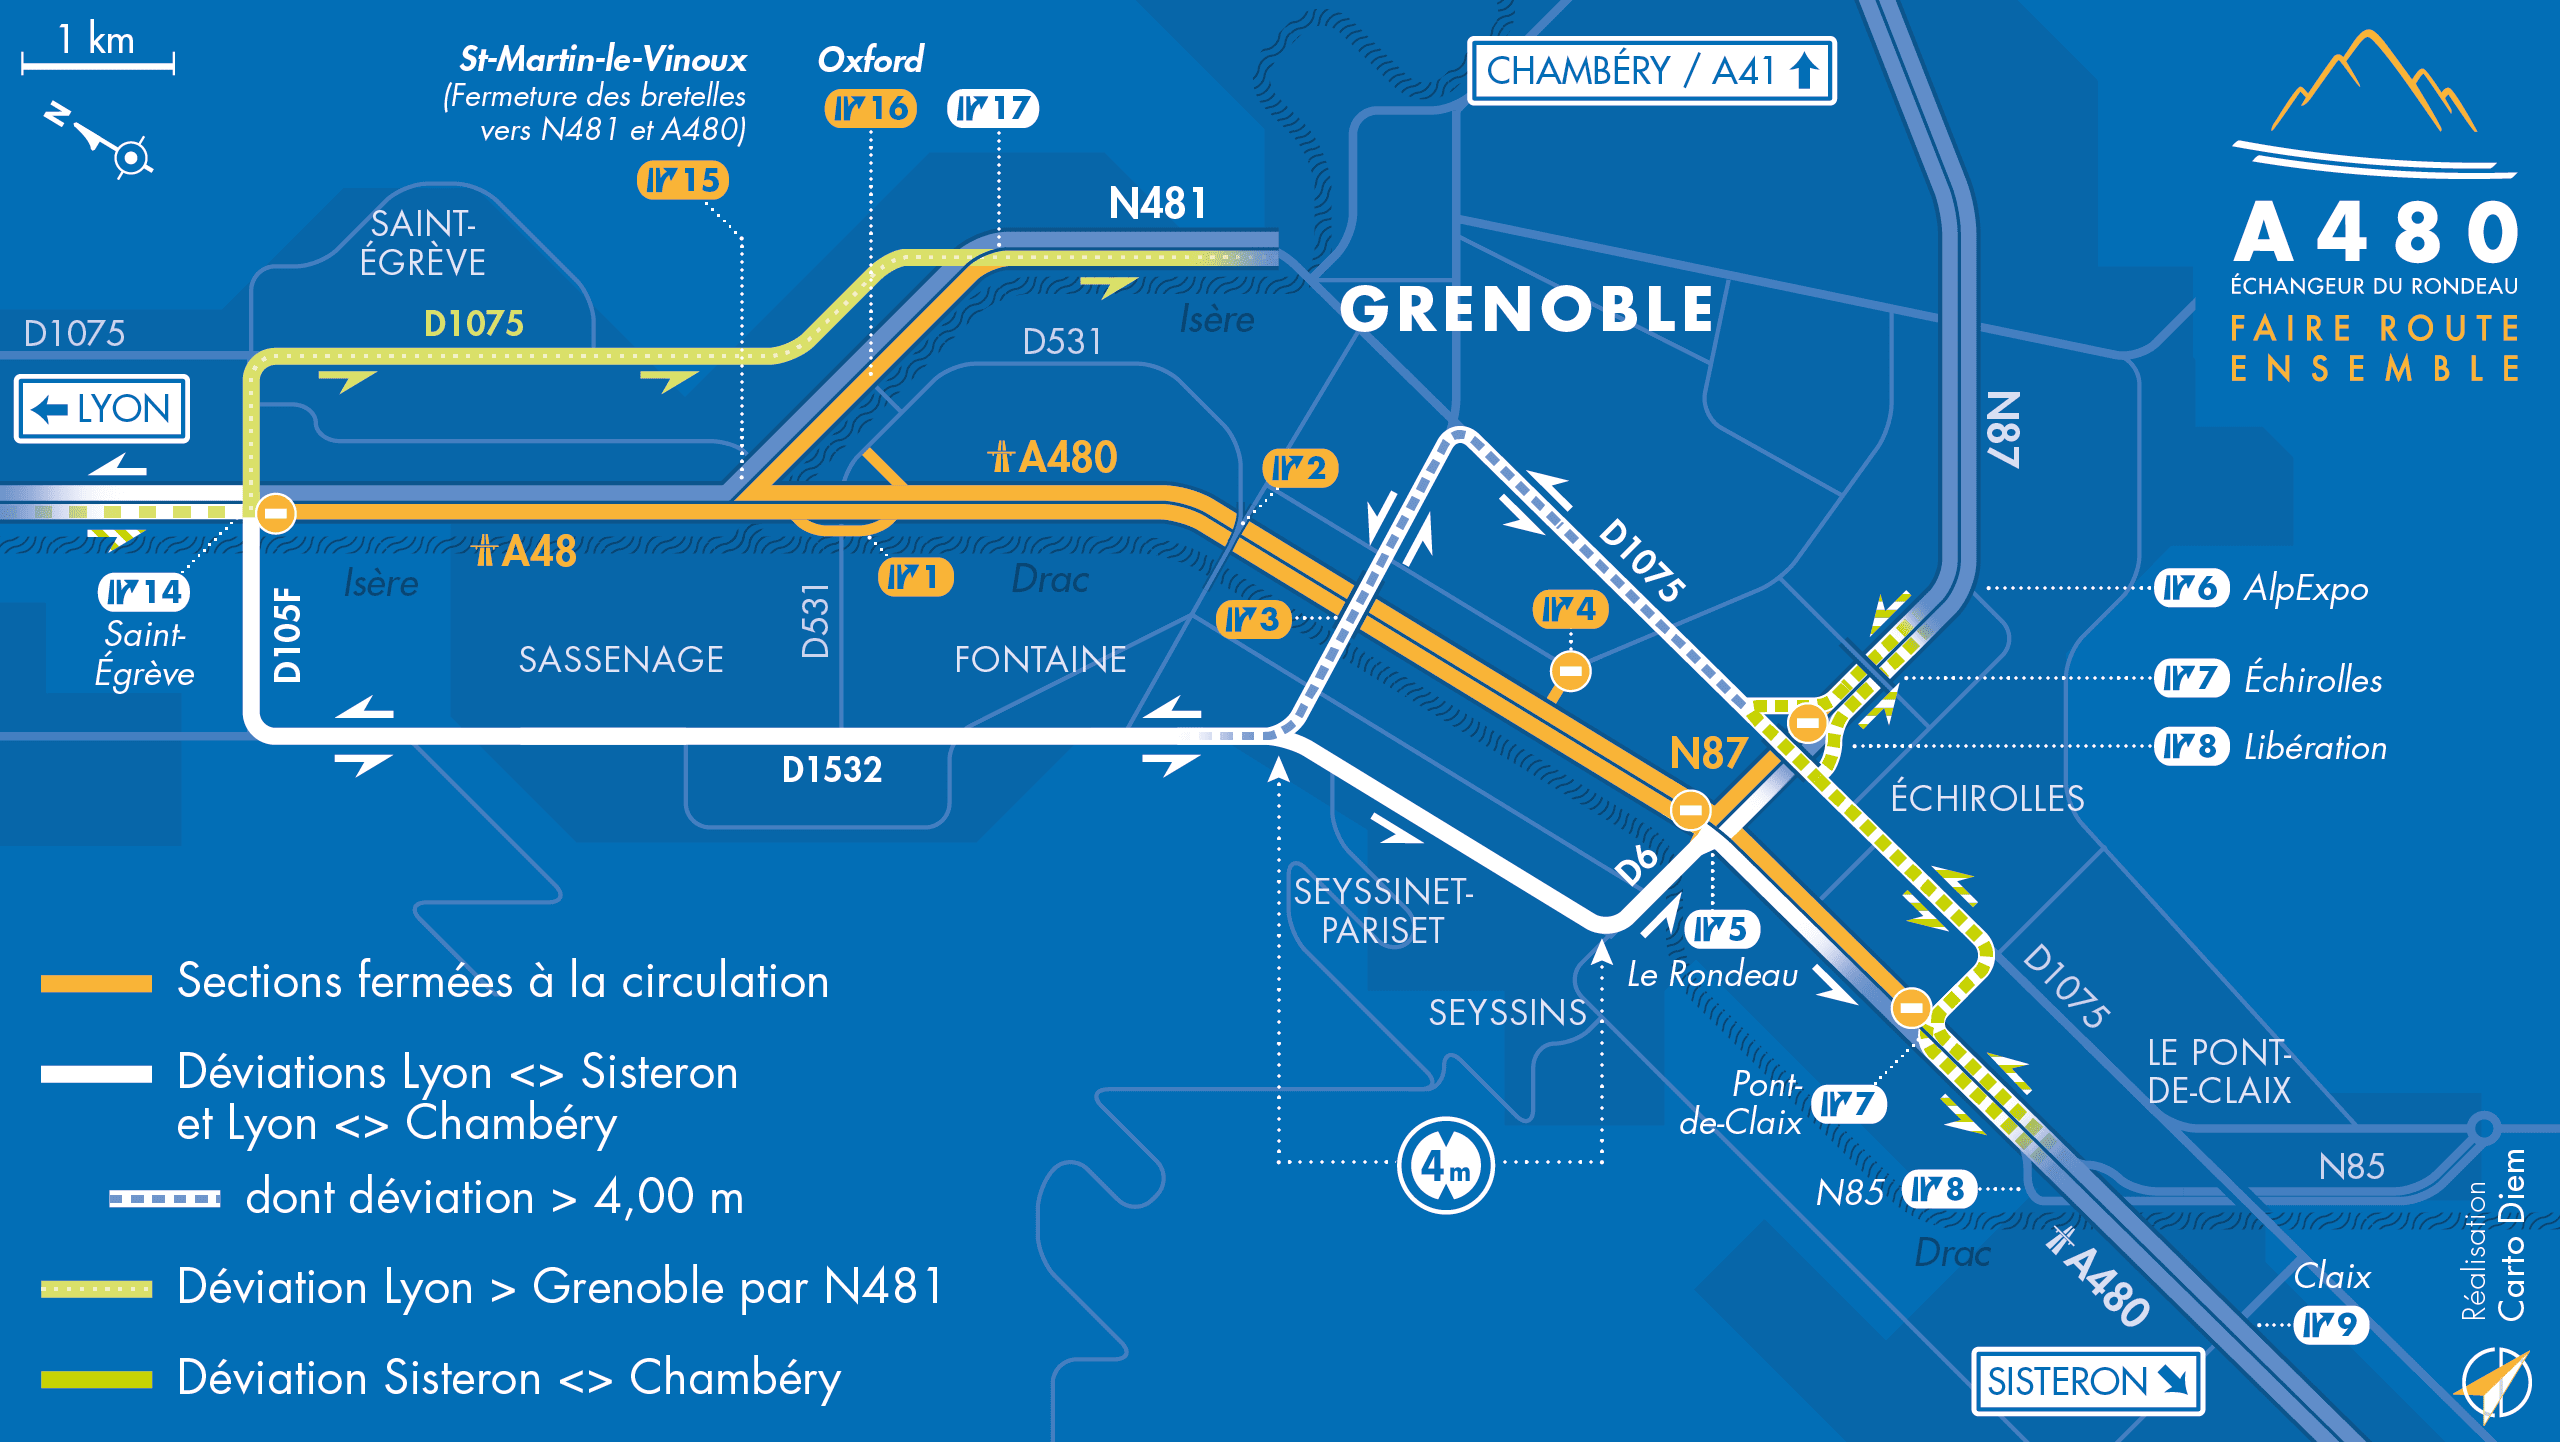 Carte de déviation suite à l'aménagement de l'autoroute urbaine A480 sur le bassin grenoblois